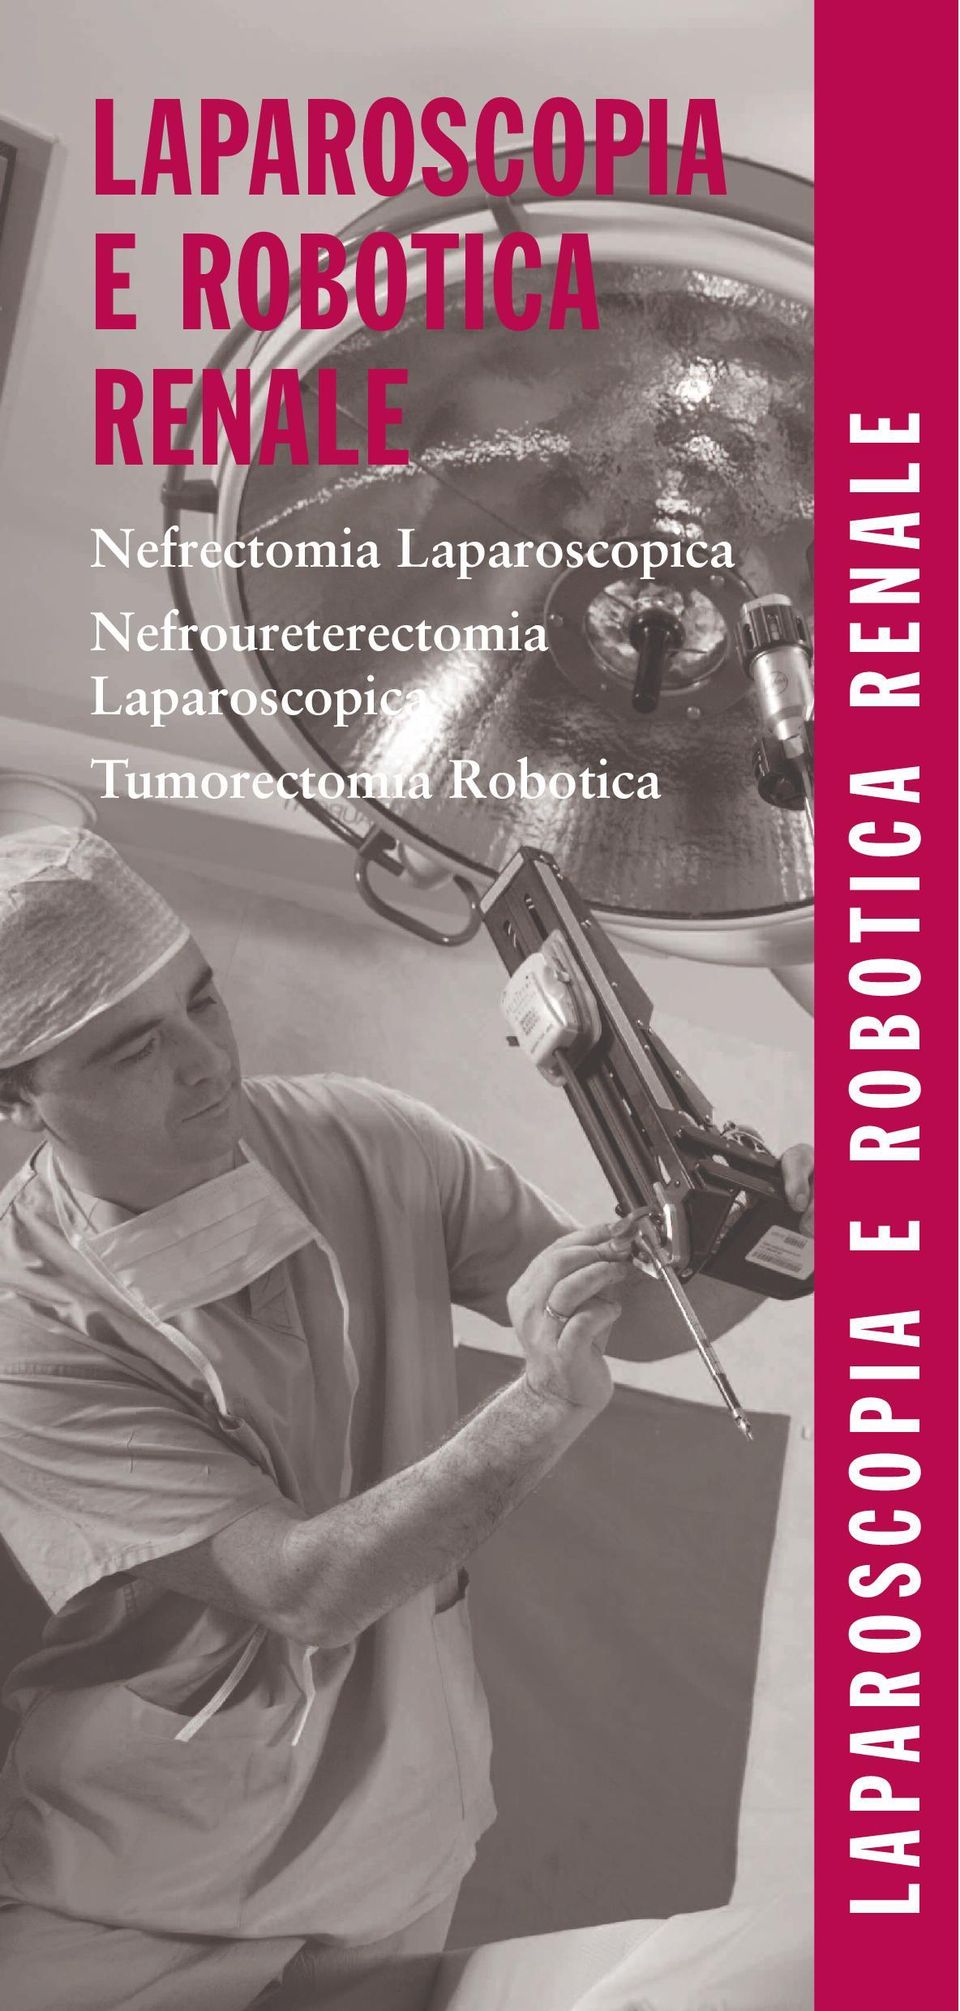 Nefroureterectomia Laparoscopica